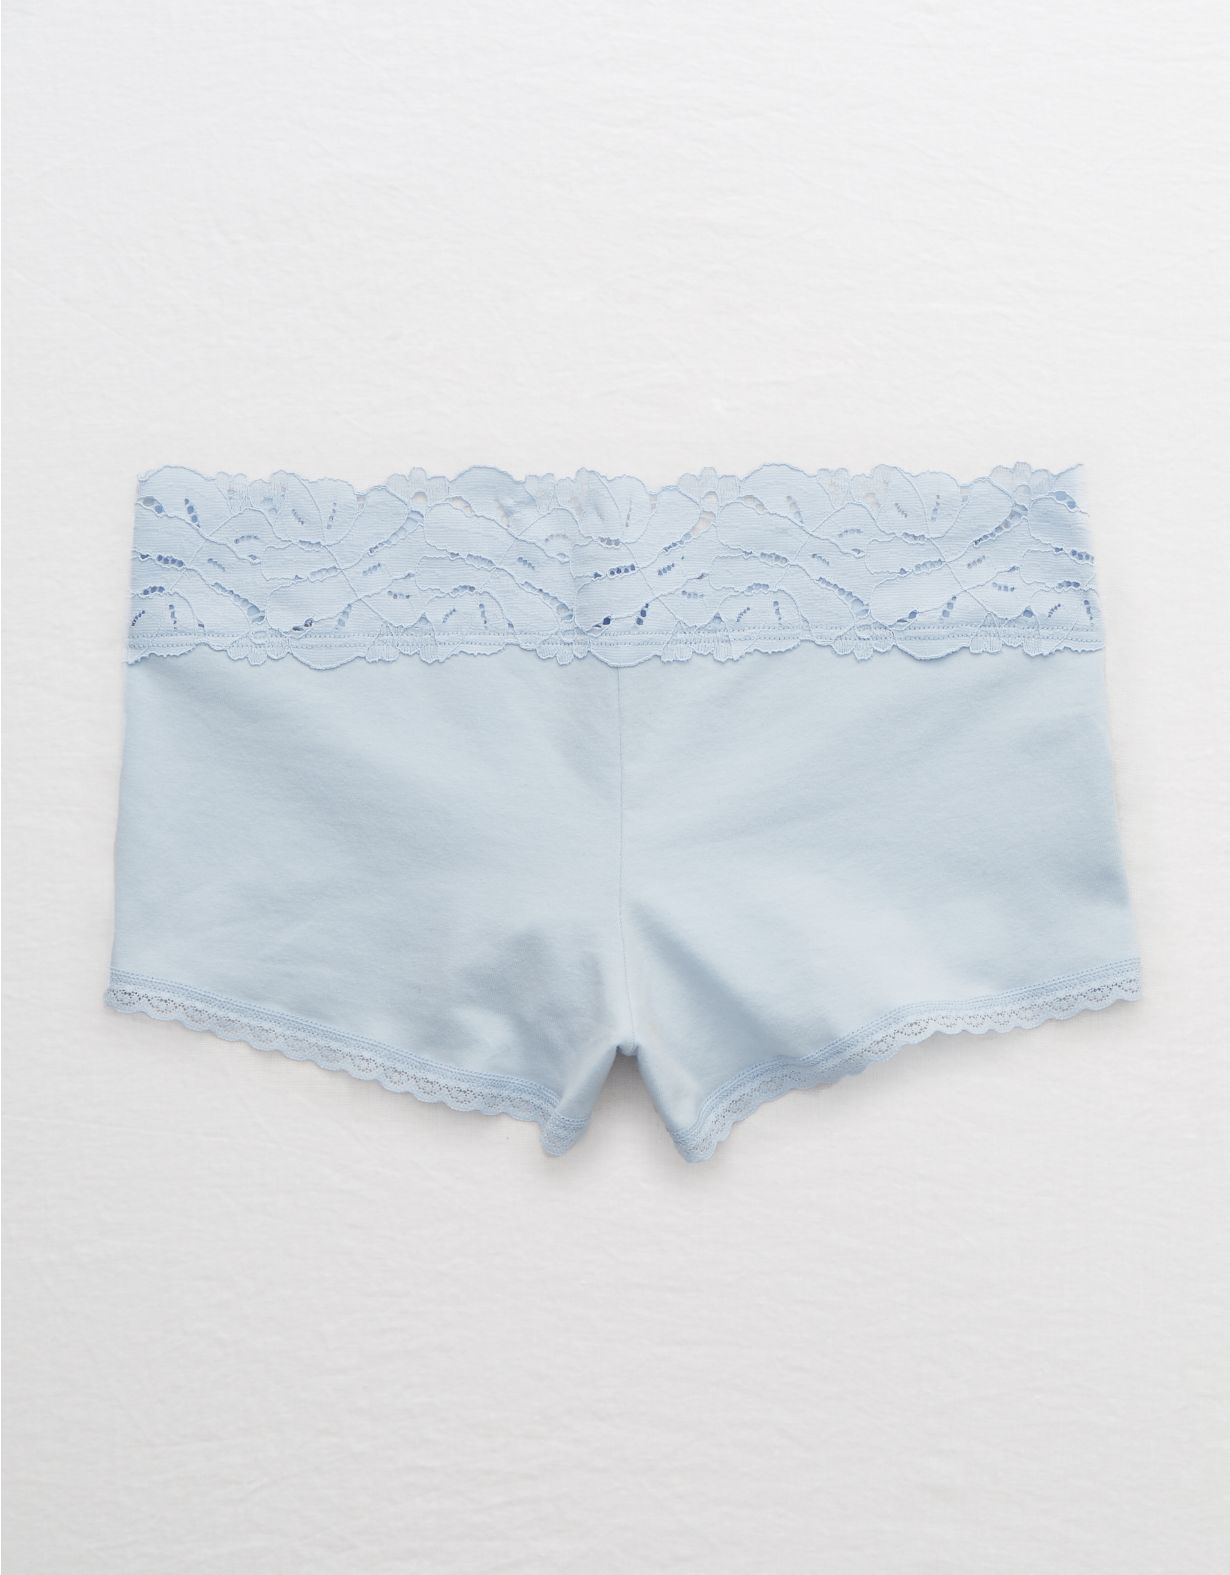 Aerie Palm Lace Cotton Boyshort Underwear